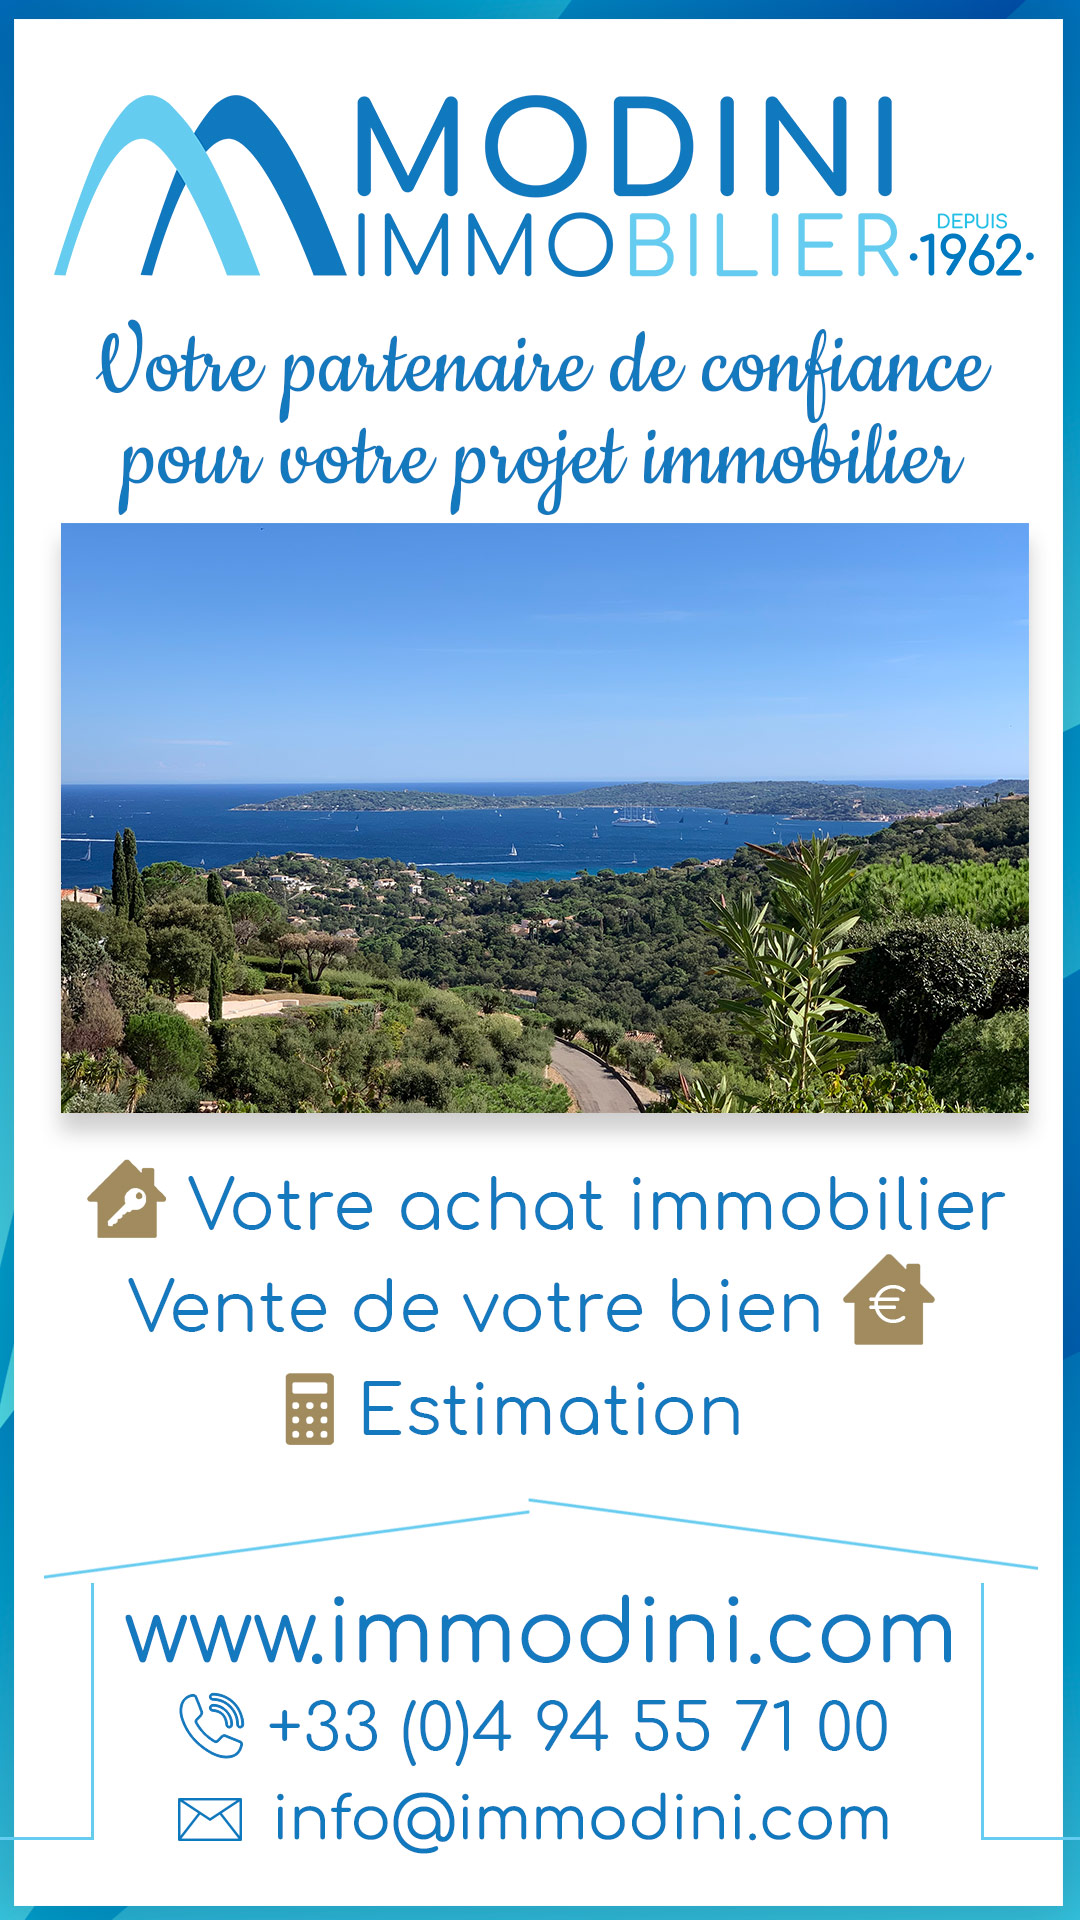 Agence Immobilière Modini Immobilier Sainte-Maxime - création story à la une Instagram